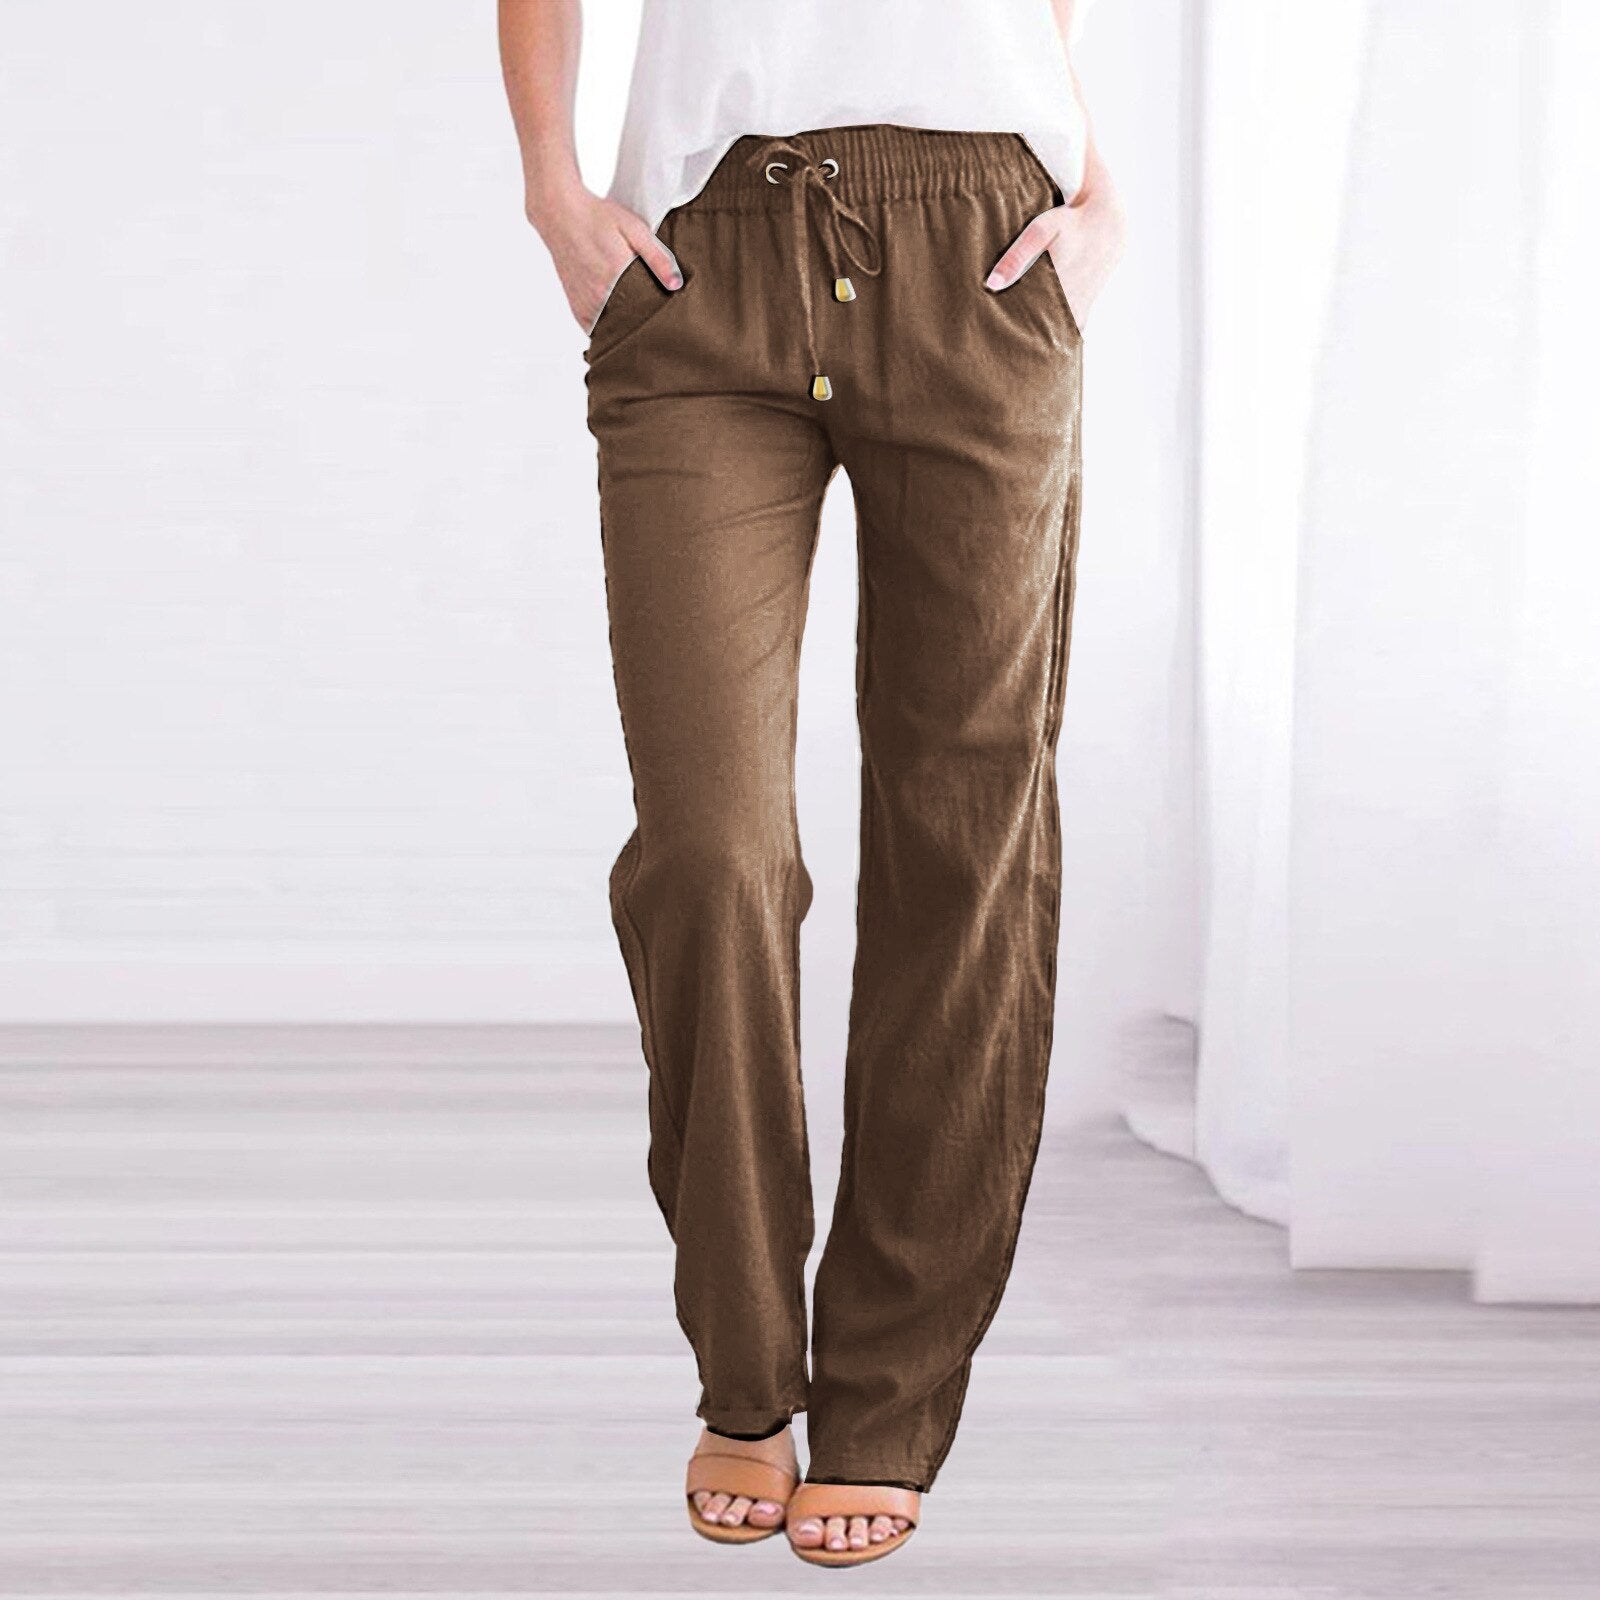 Loose fit cotton pants for women | Arras